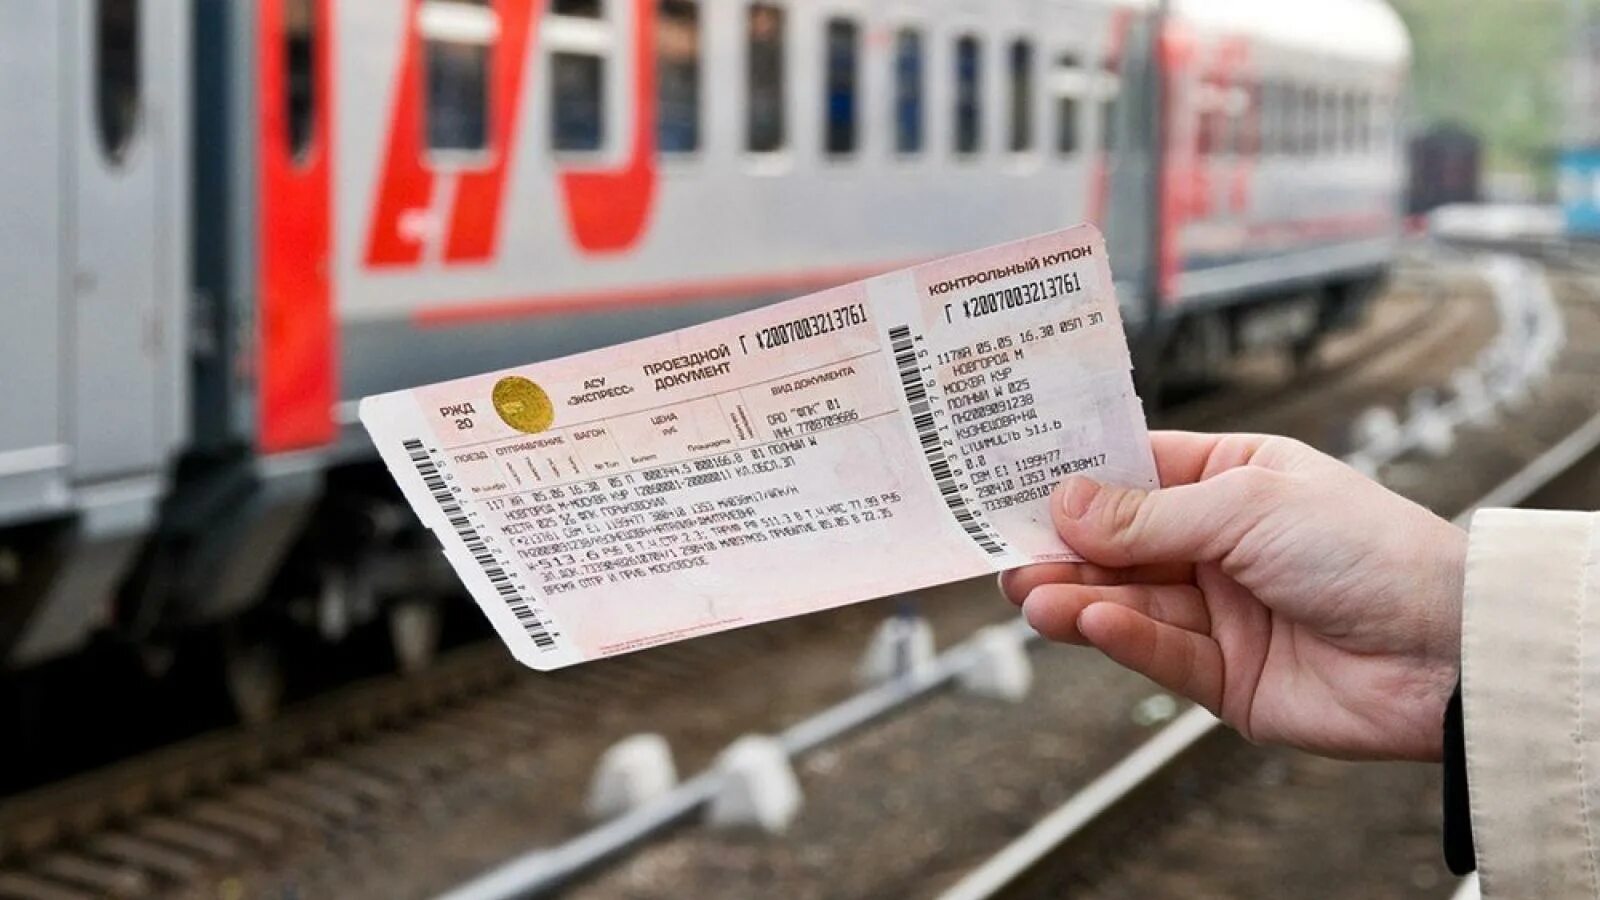 Взять жд билет. Билеты РЖД. Билет на поезд. Фотография билета на поезд. Авиабилеты фото.